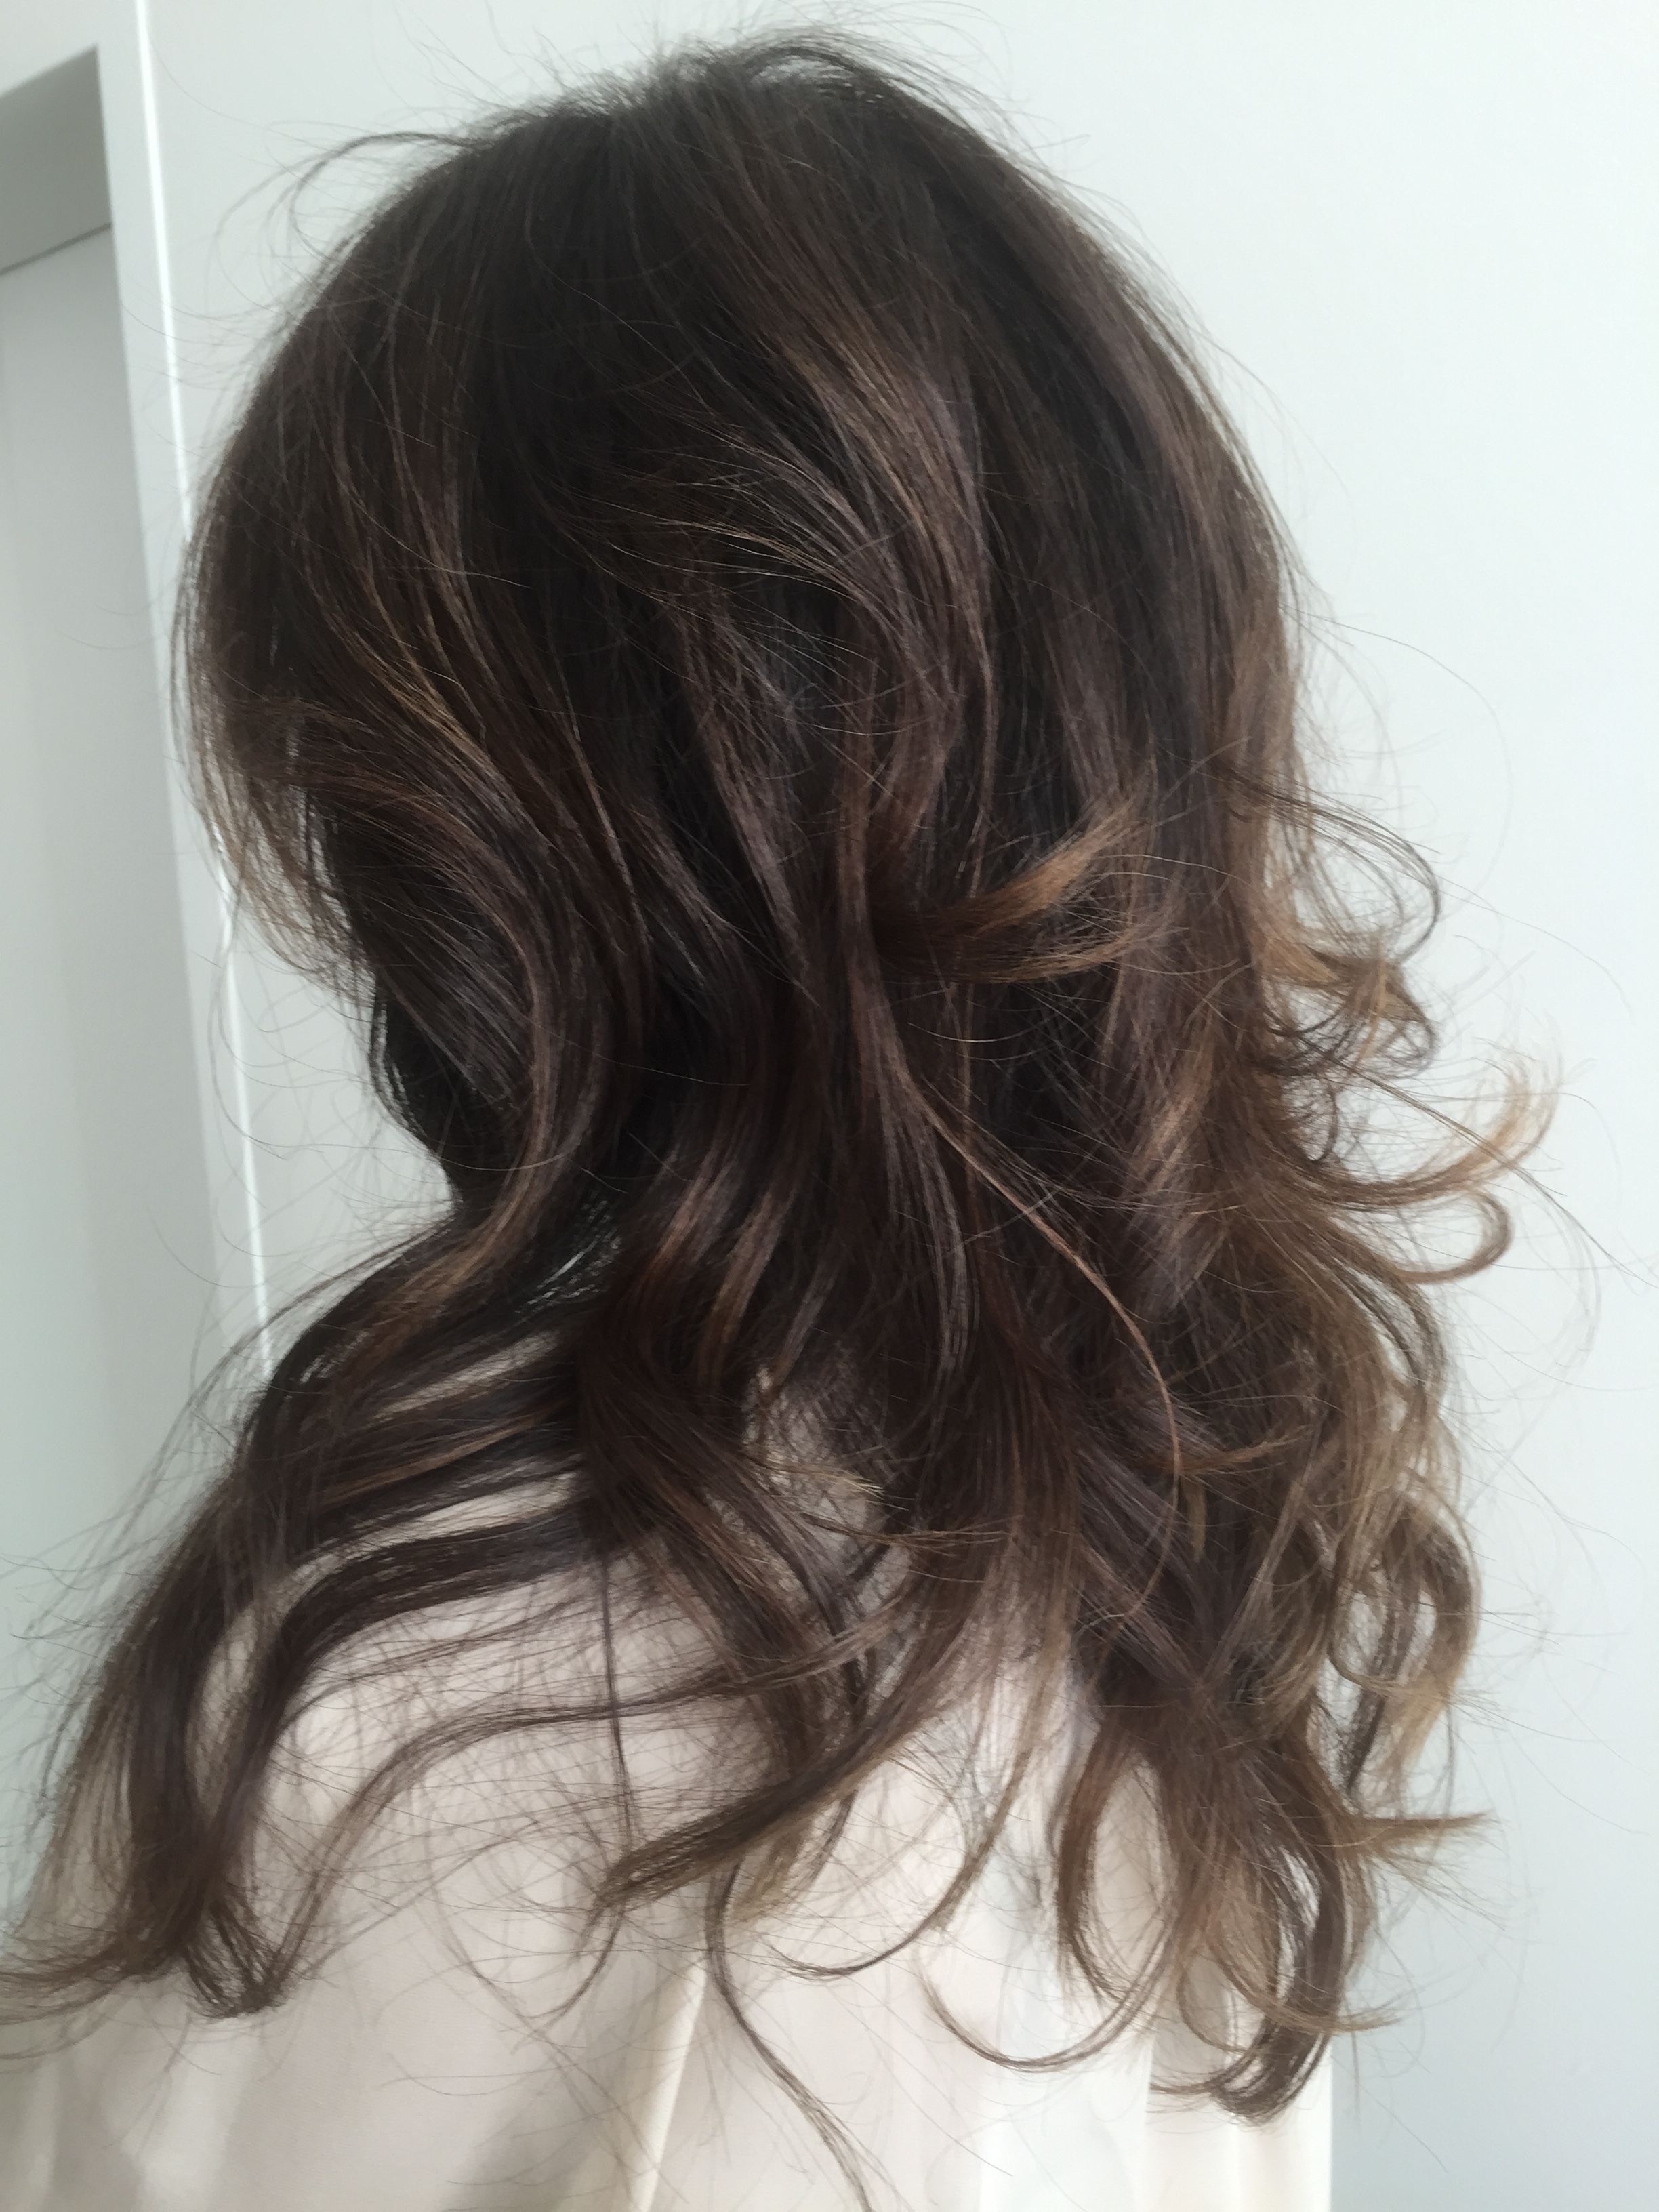 HairColorByCarlos-brunette-loose_curls.JPG